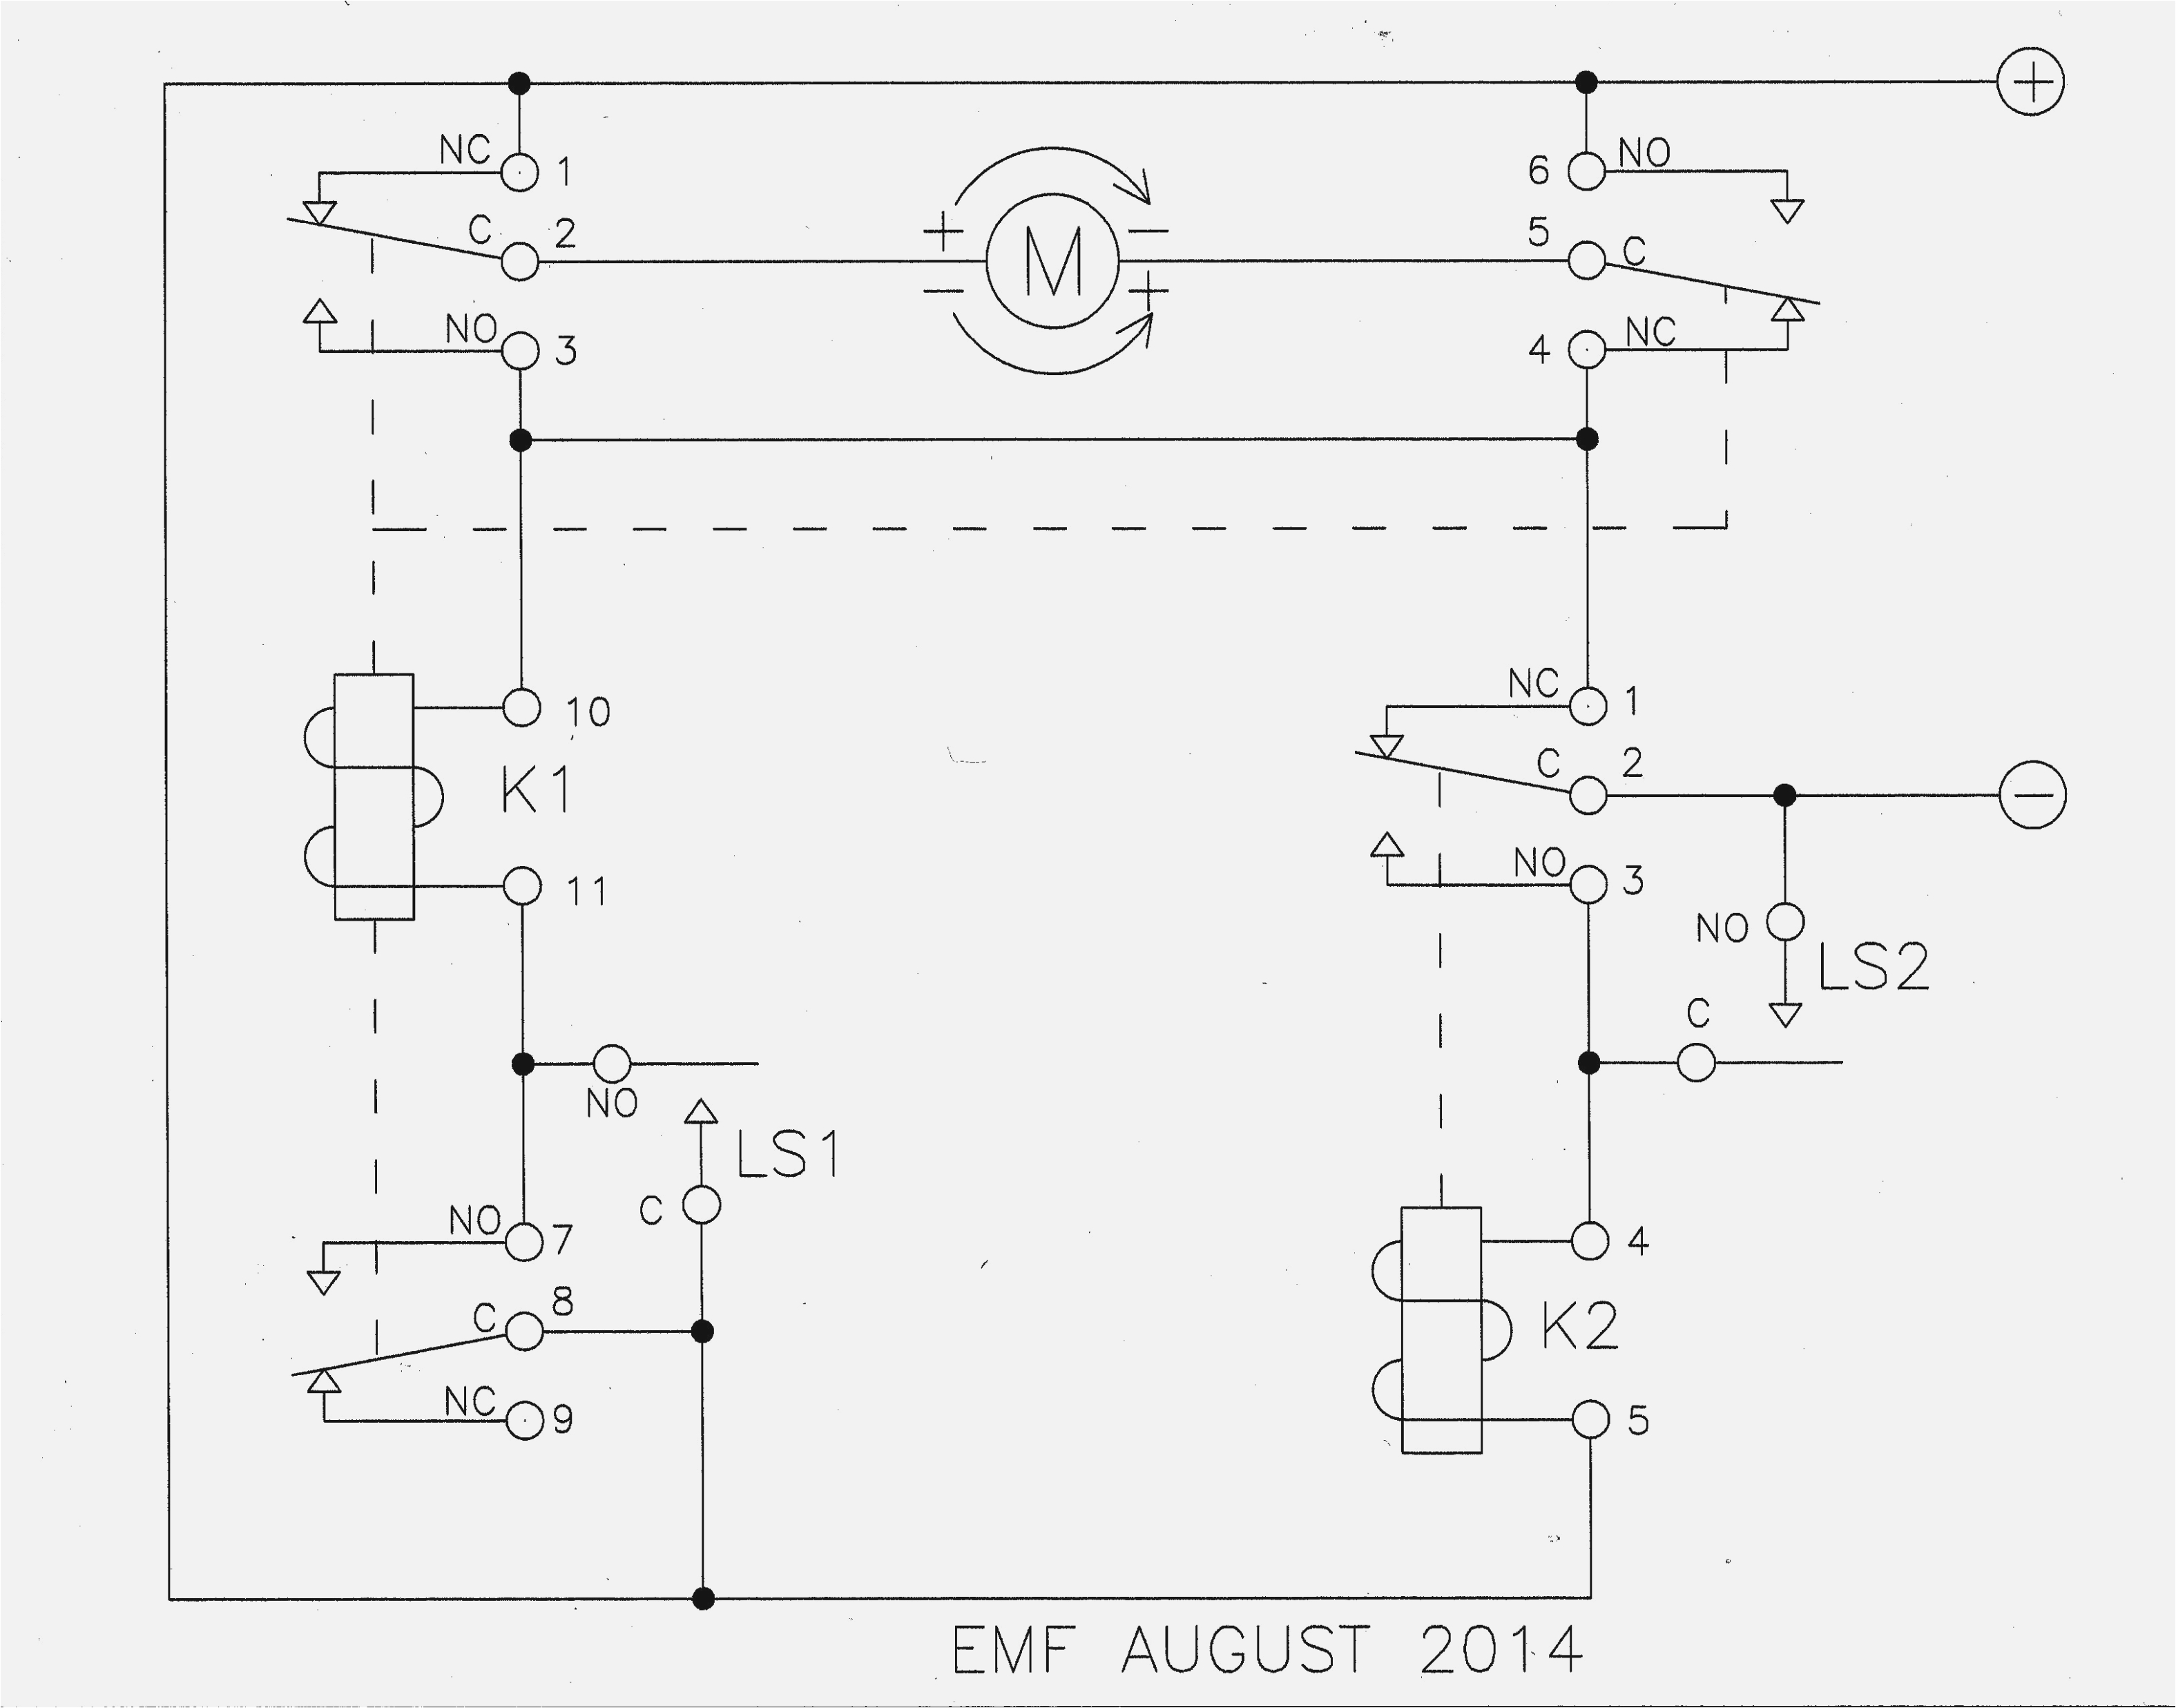 omron wiring diagram